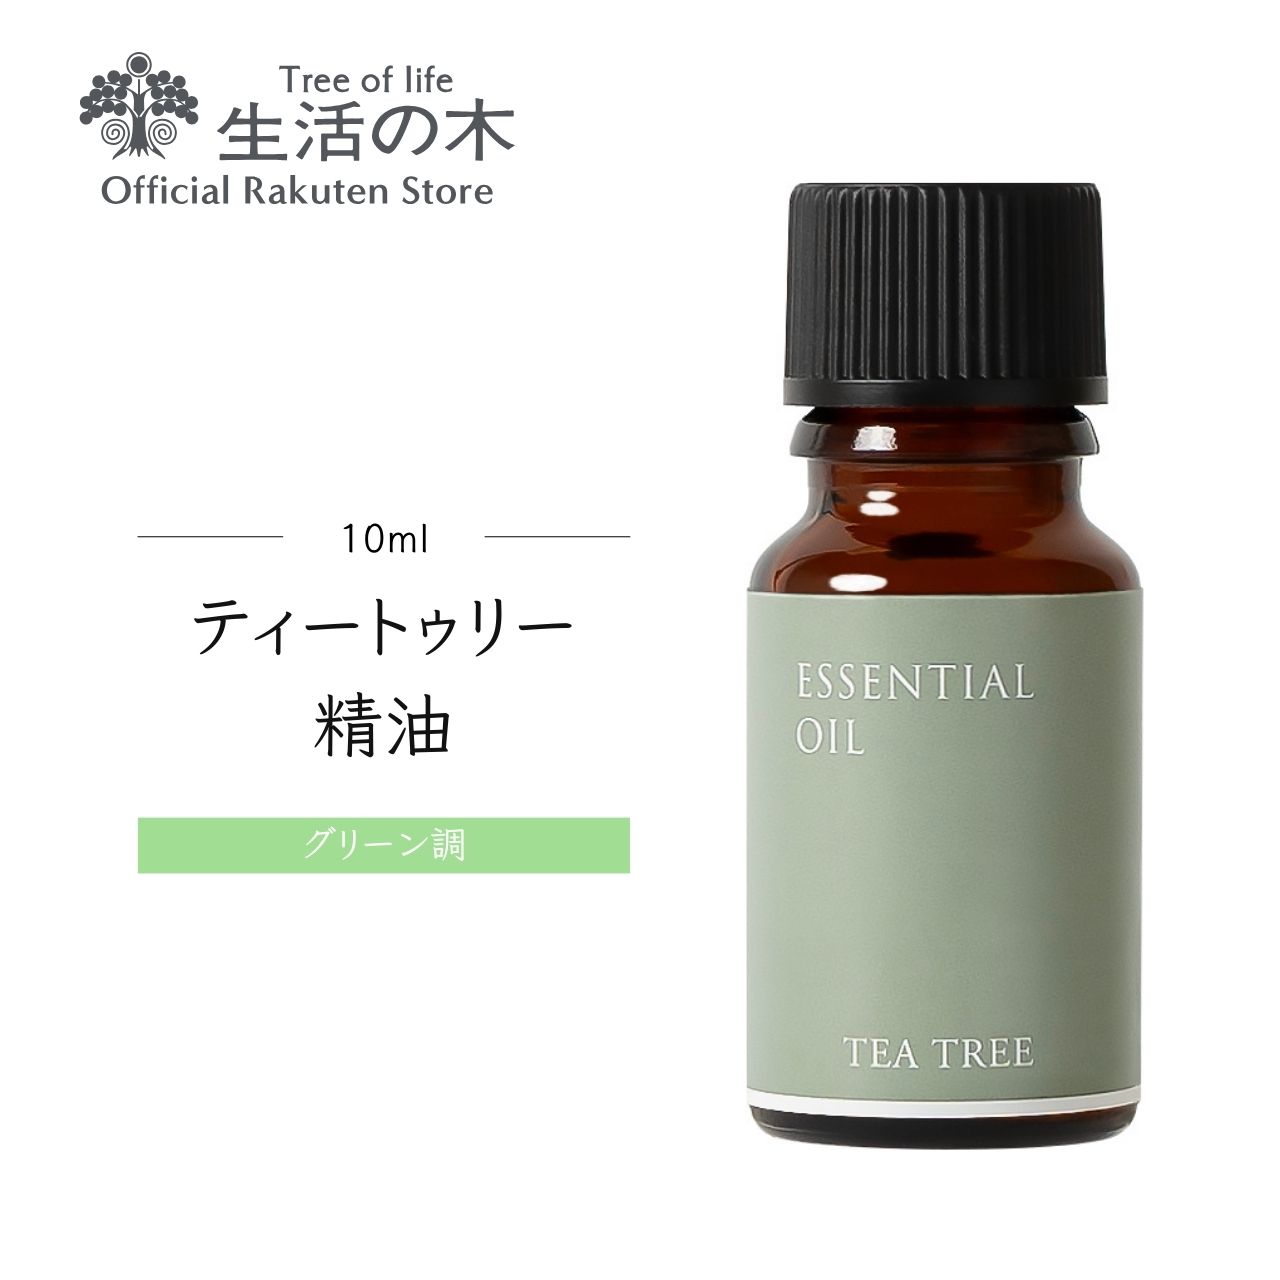 ティートゥリー精油 / Tea tree 10ml | アロマ アロマオイル 精油 エッセンシャルオイル AEAJ表示基準適合認定精油 香り 雑貨 グリーン